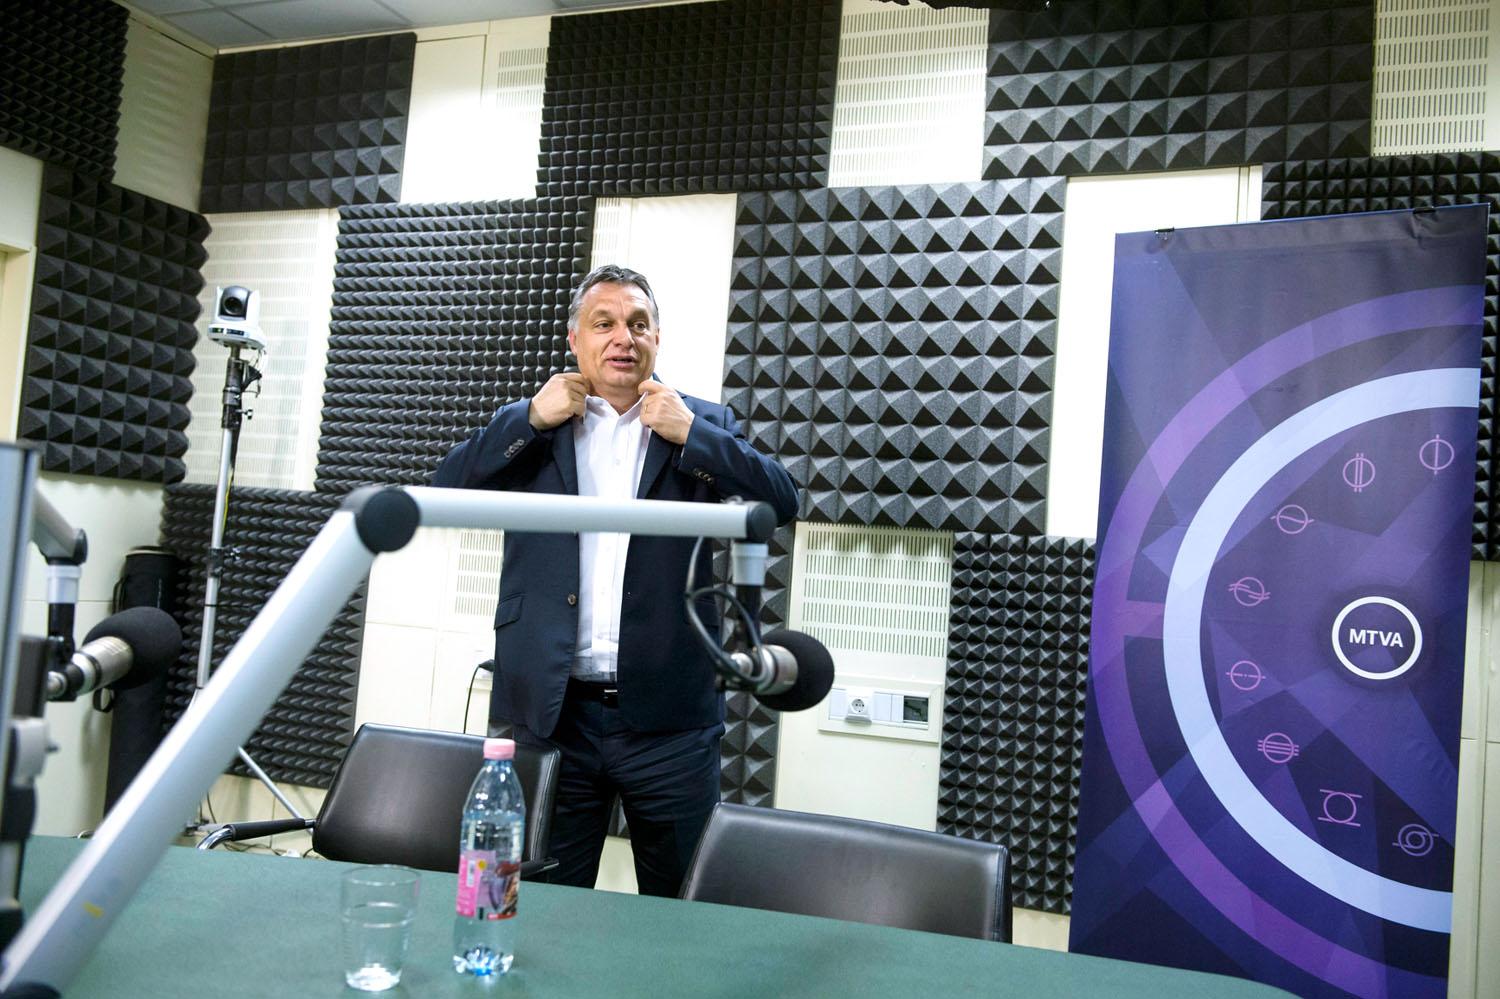 Már nem szól a rádió: Orbán Viktor interjú után